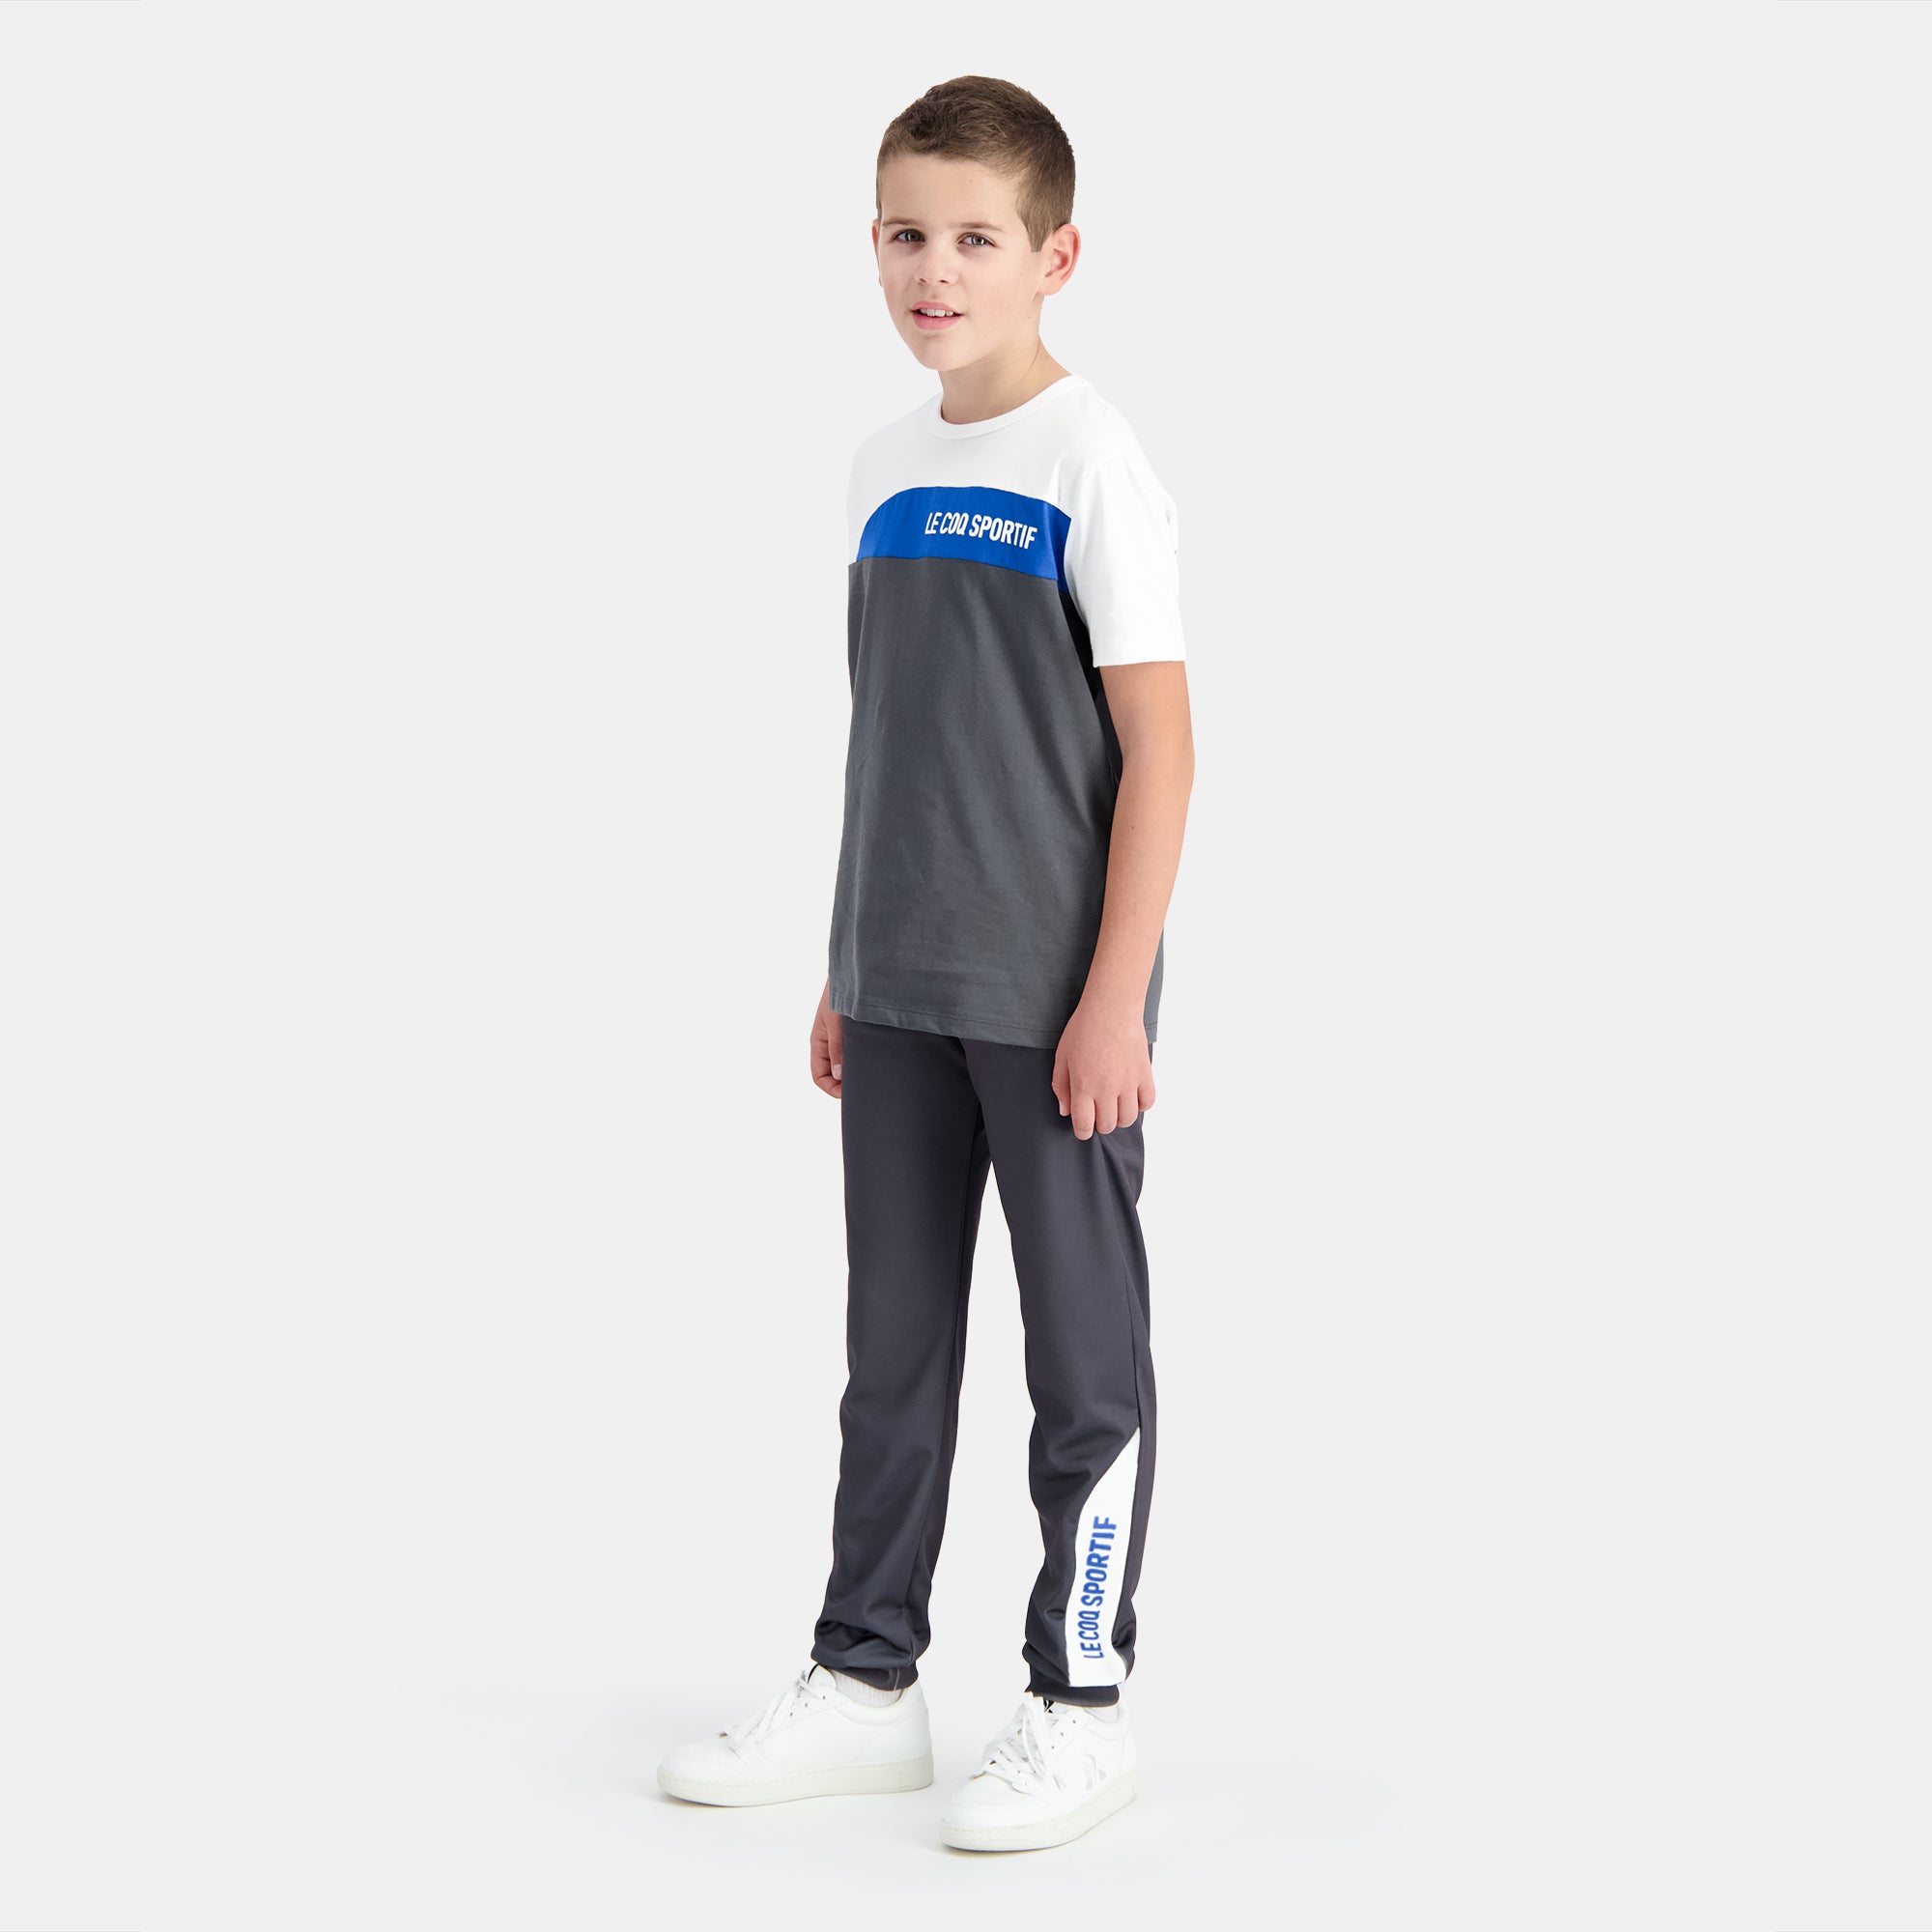 2410158-SAISON 1 Pant Regular N°1 Enfant asphalt  | Trousers Regular for kids